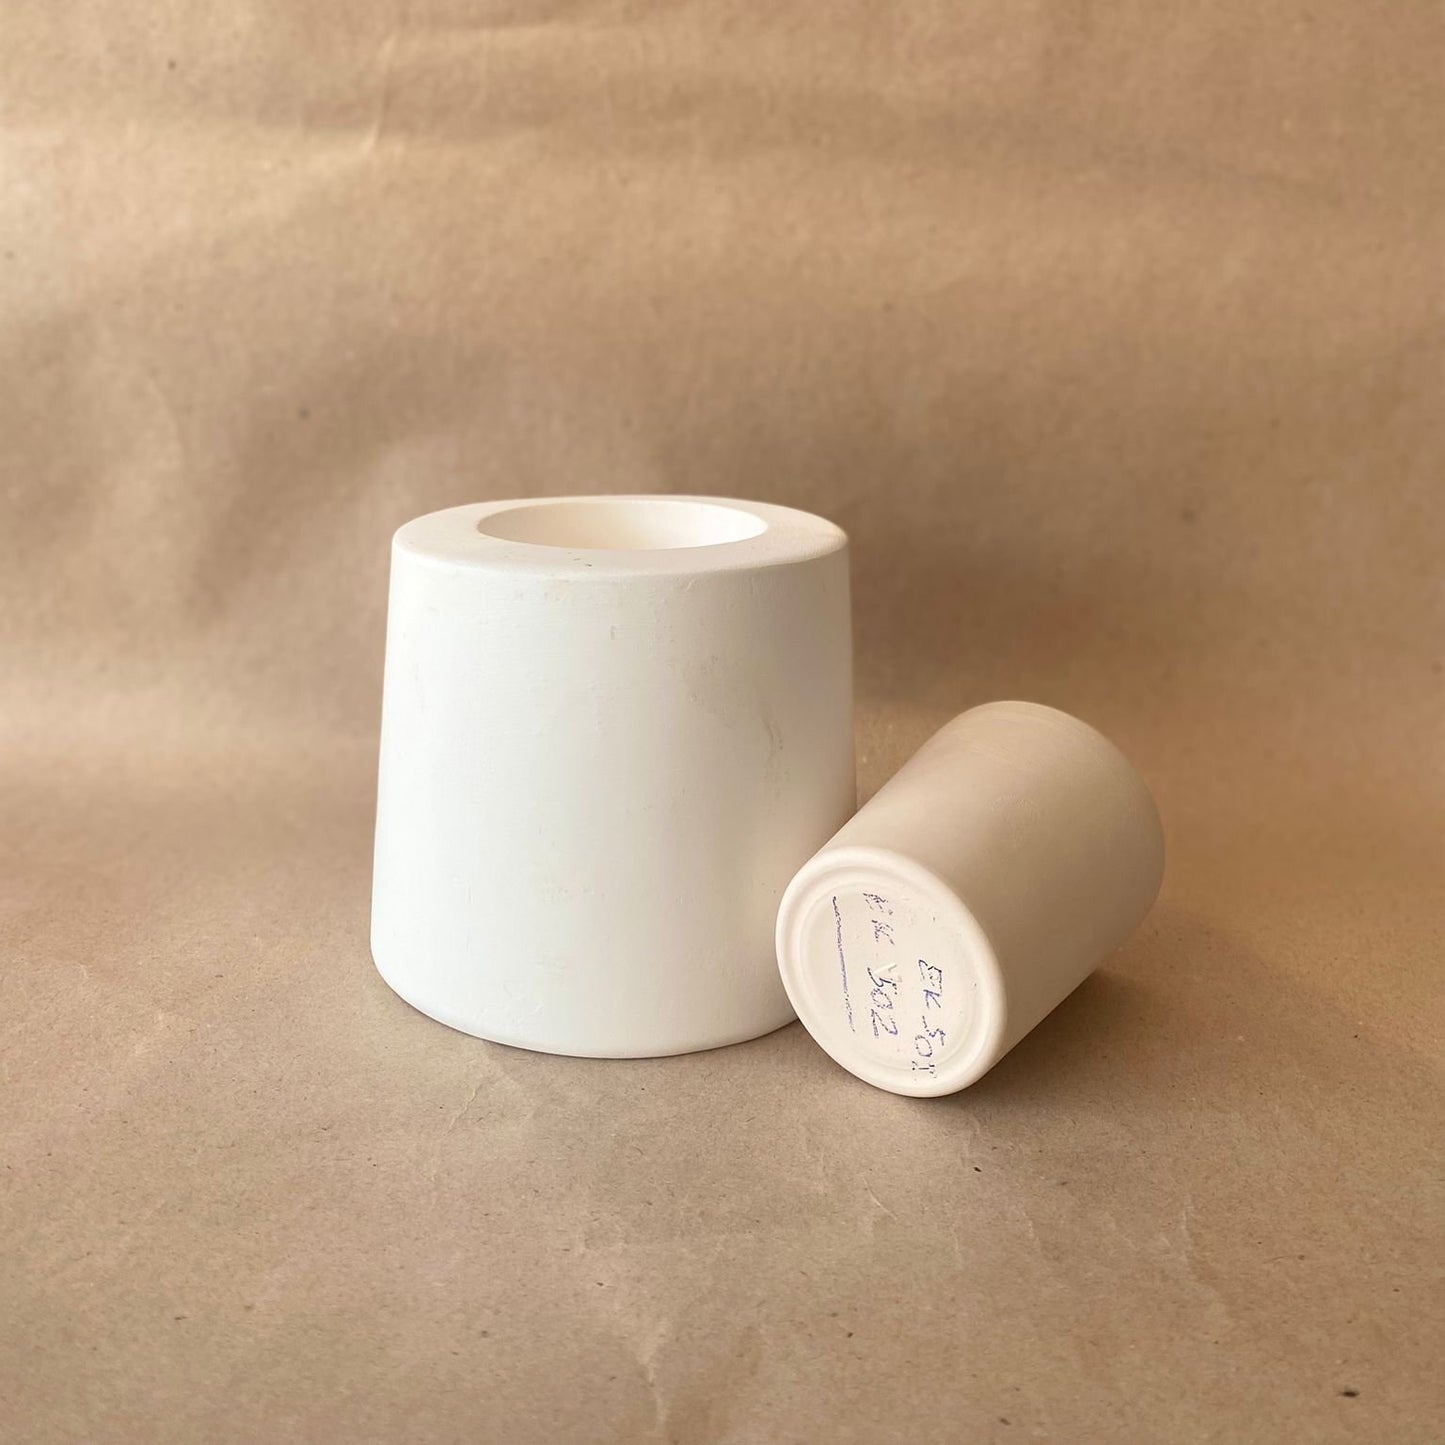 EK502 - Ceramic Casting Mold - Rim Glazed Cup 6.5x7.5